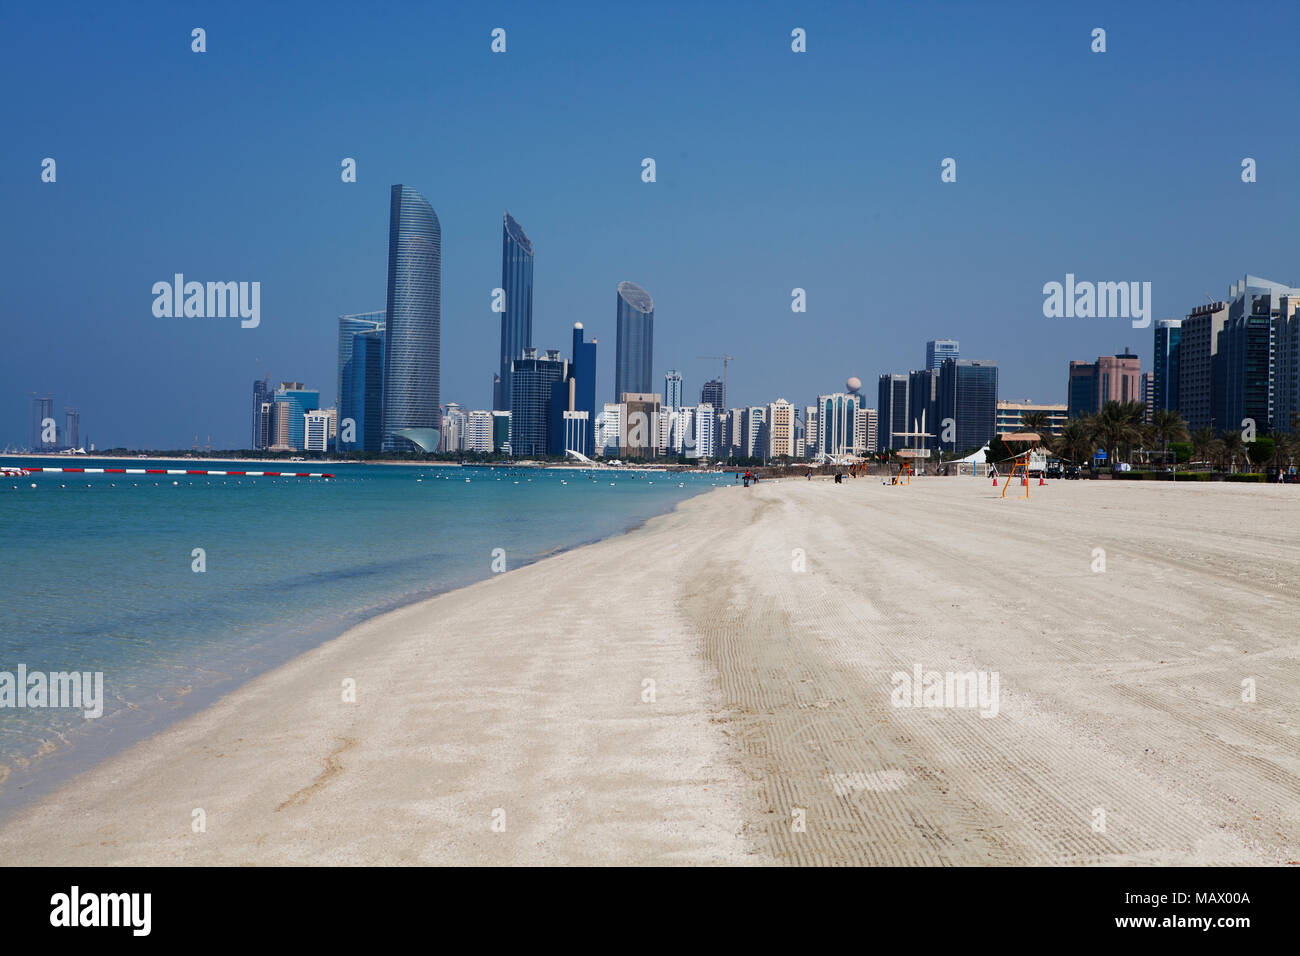 Assunto : Praia com prédios ao fundo em Local : Abu Dhabi Abu Dhabi, Emirados arabes Data : 10/10/13 Auteur : Eduardo Zappia Banque D'Images